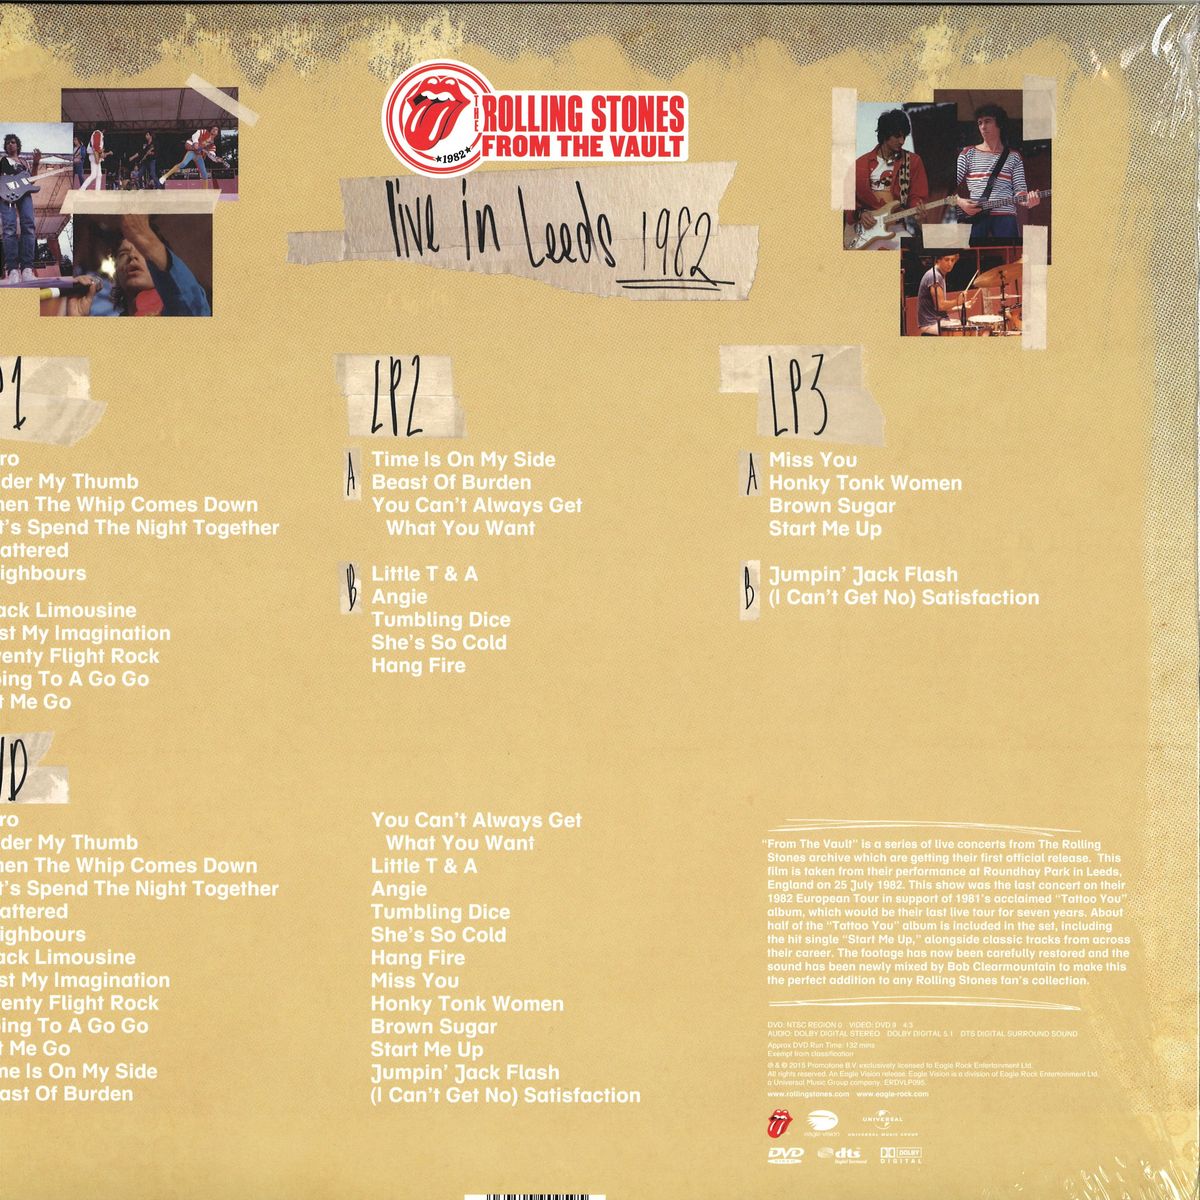 The Rolling Stones - From The Vault - Live In Leeds 1982 (+dvd!!) /  Universal UK ERDVLP095 / 5034504909595 - Vinyl